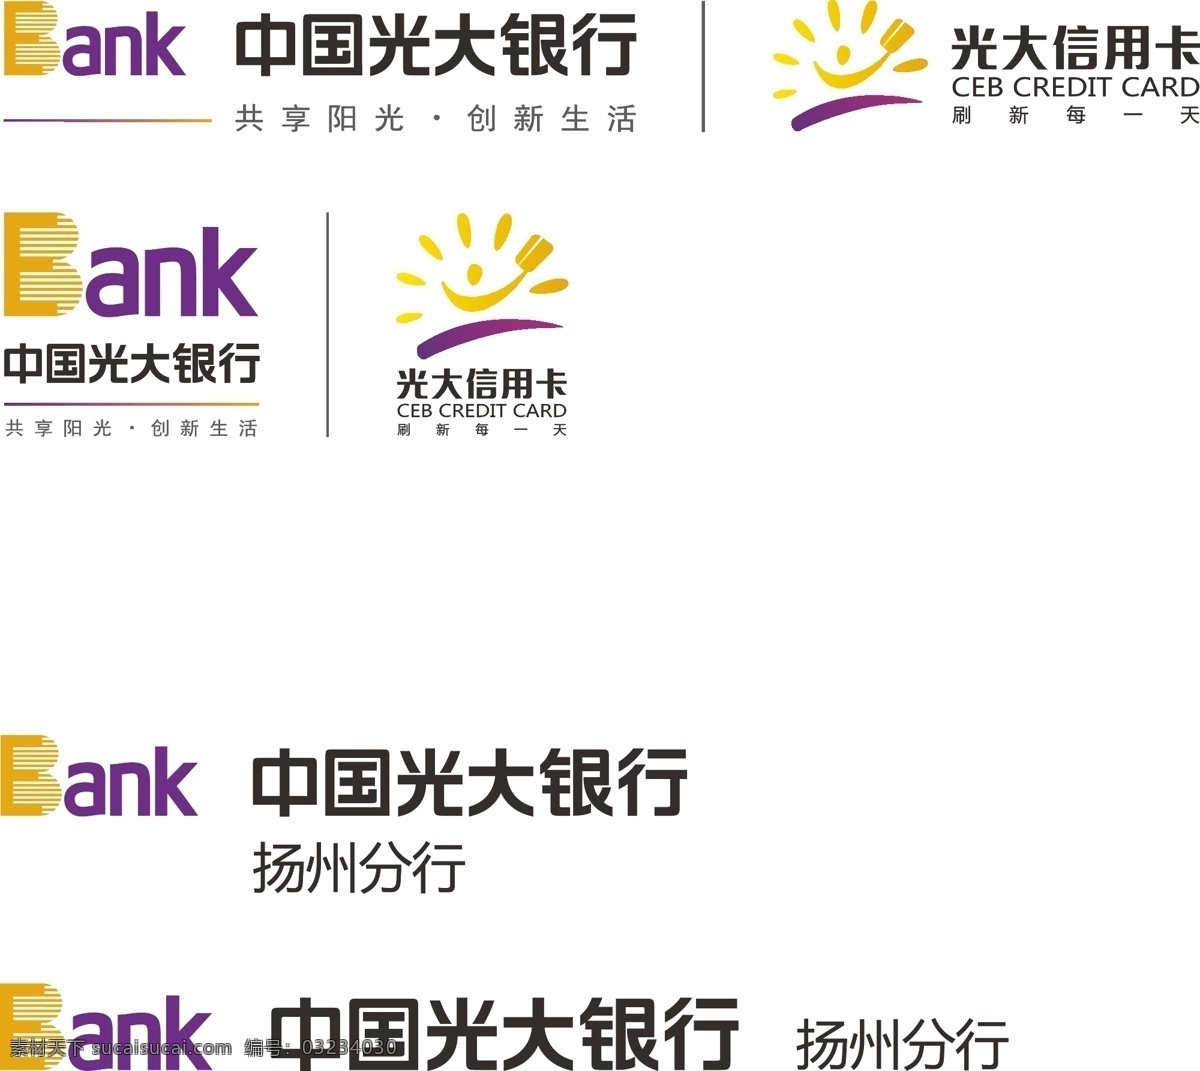 光大银行 矢量 logo 中国光大银行 矢量logo 光大信用卡 扬州分行 图标 标志 标志图标 企业